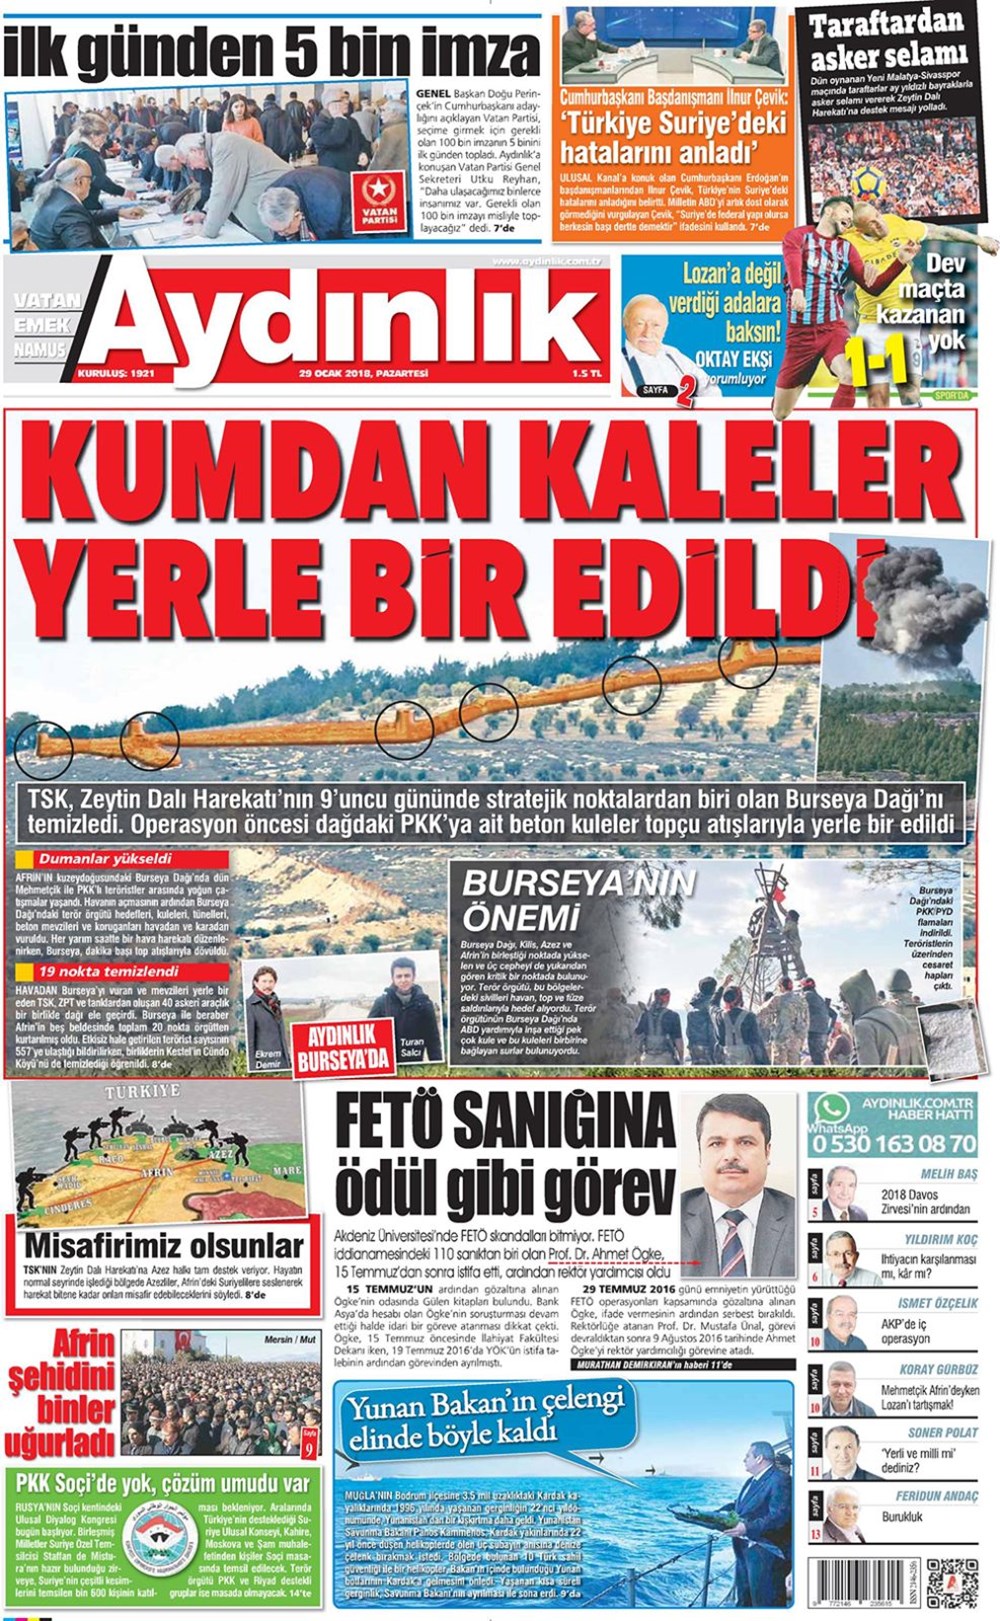 Gunun Gazete Mansetleri 29 Ocak 2018 Son Dakika Turkiye Haberleri Ntv Haber